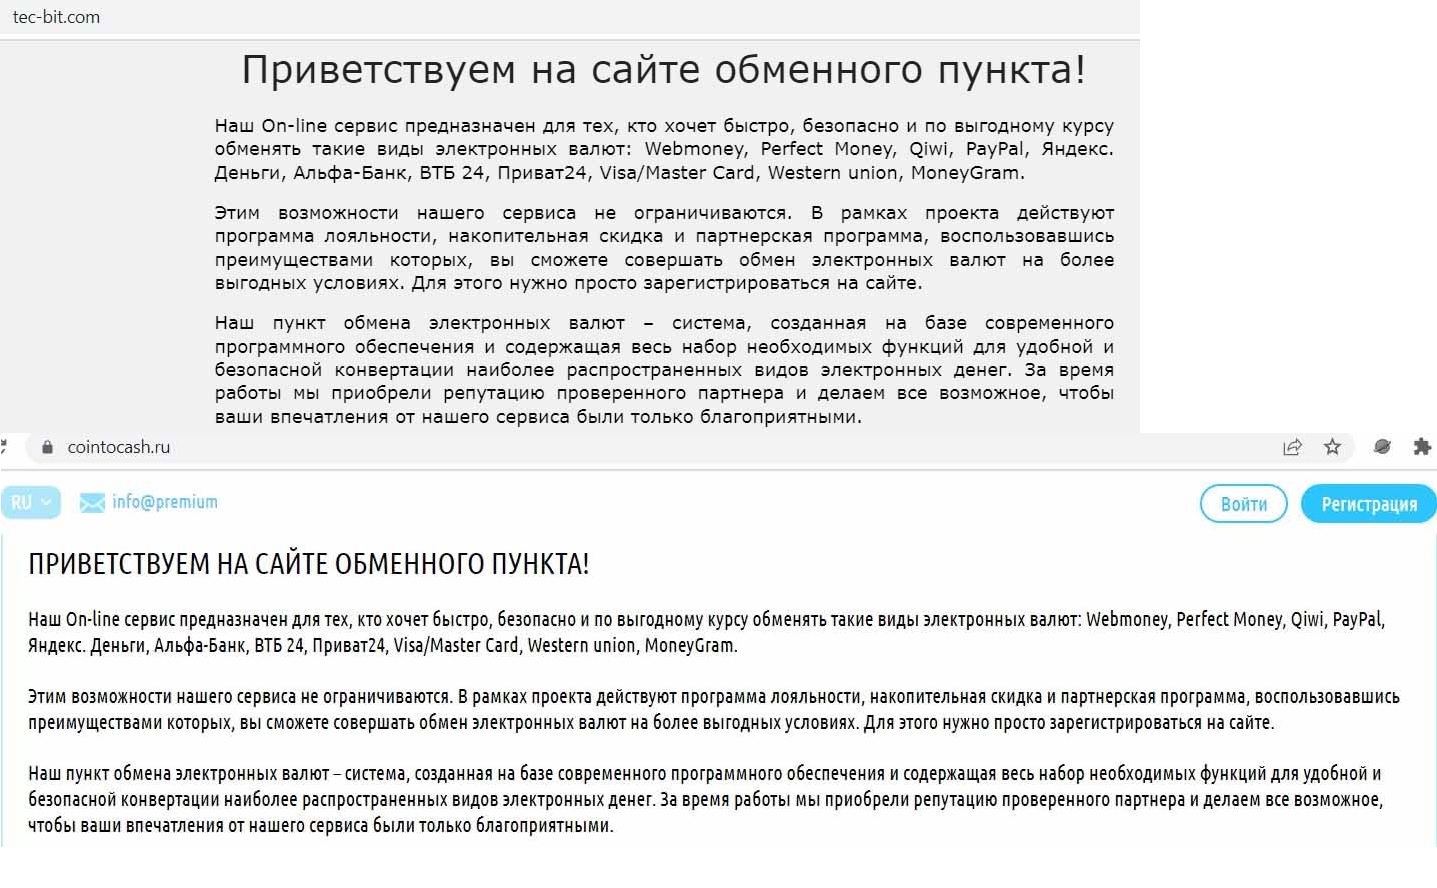 Серия фейковых криптообменников с несколькими вариантами дизайна атакует Рунет